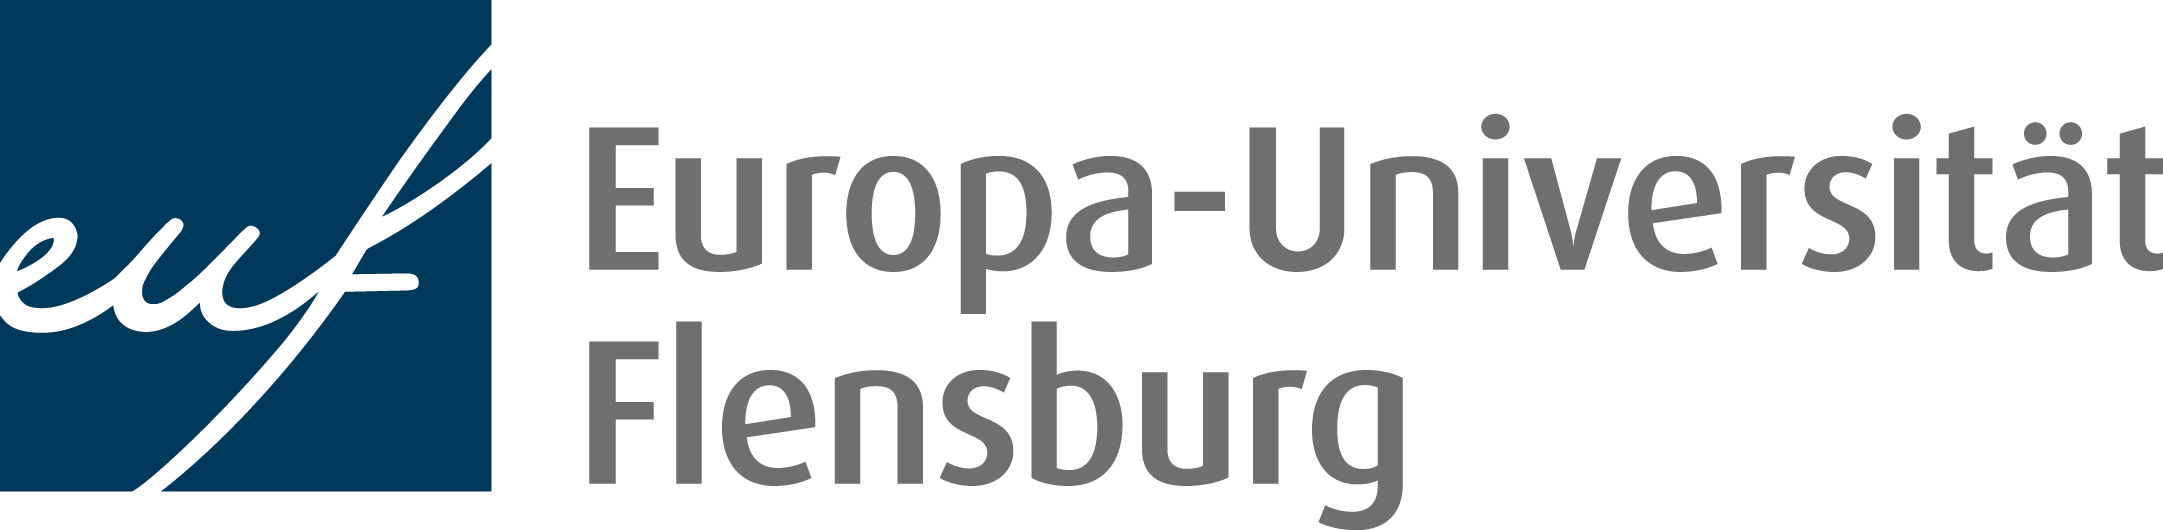 Statuswebsite für Systeme der Europa-Universität Flensburg (EUF)